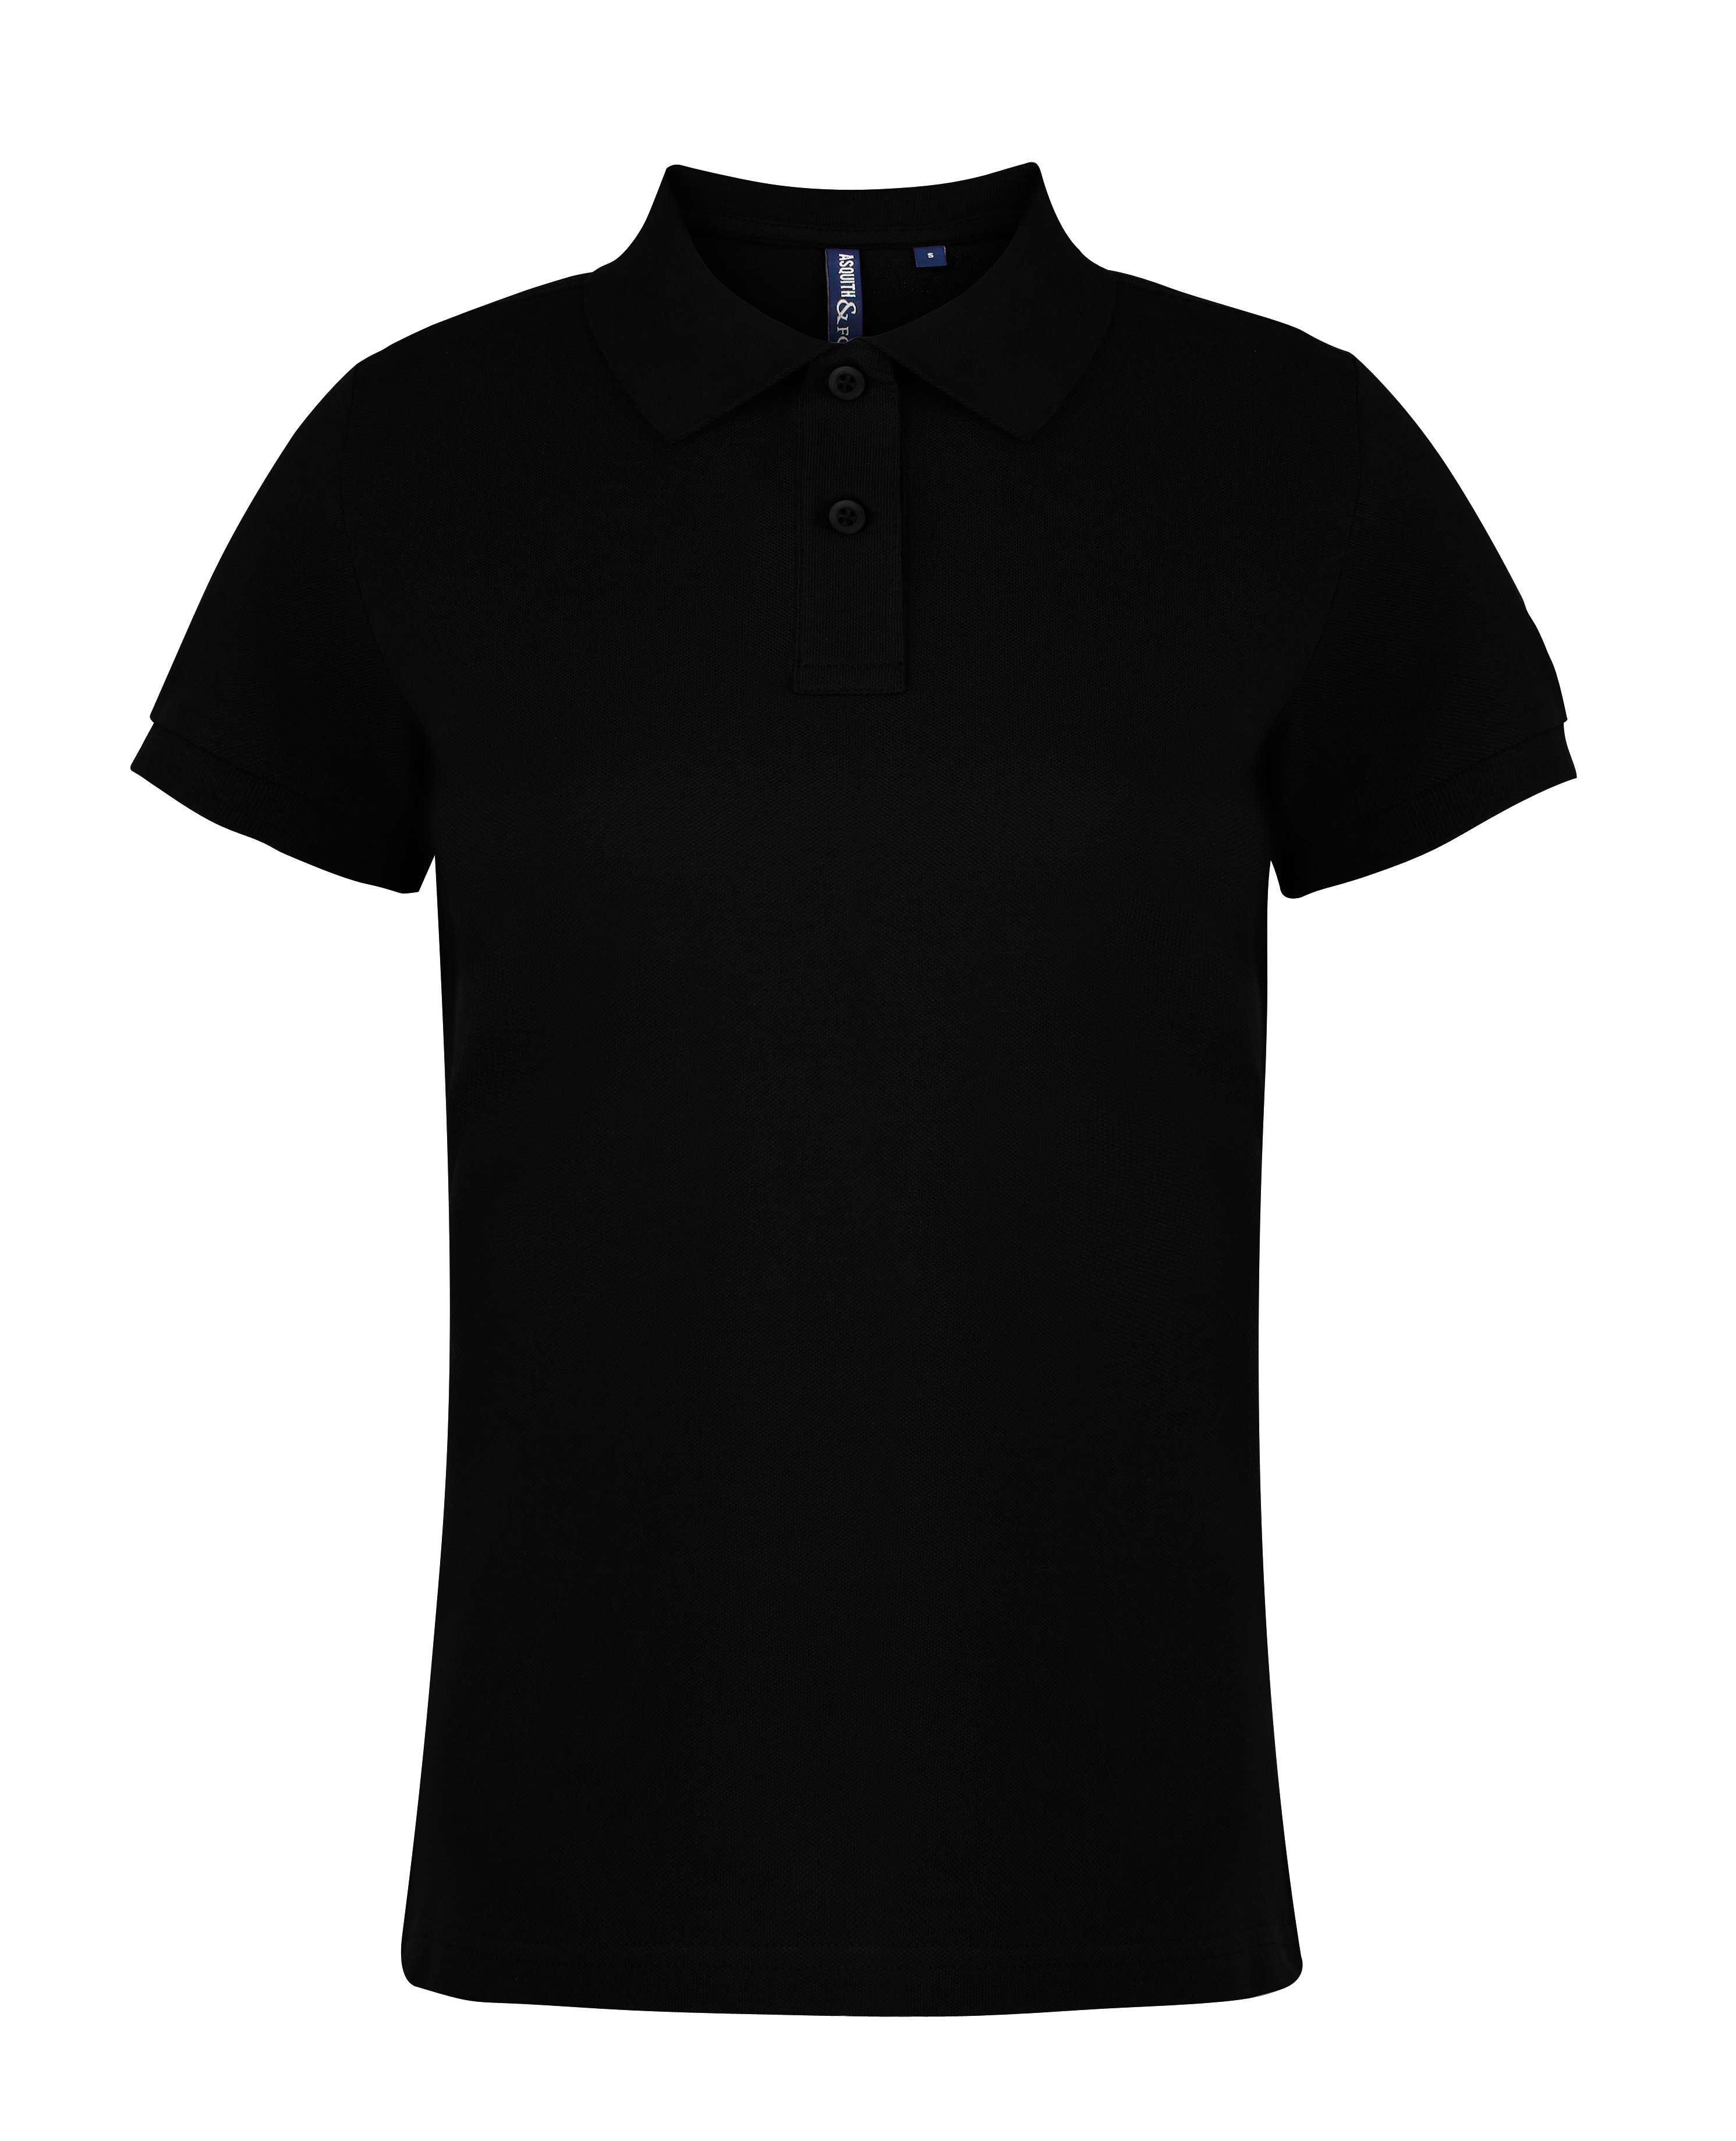 plain black ladies polo shirt